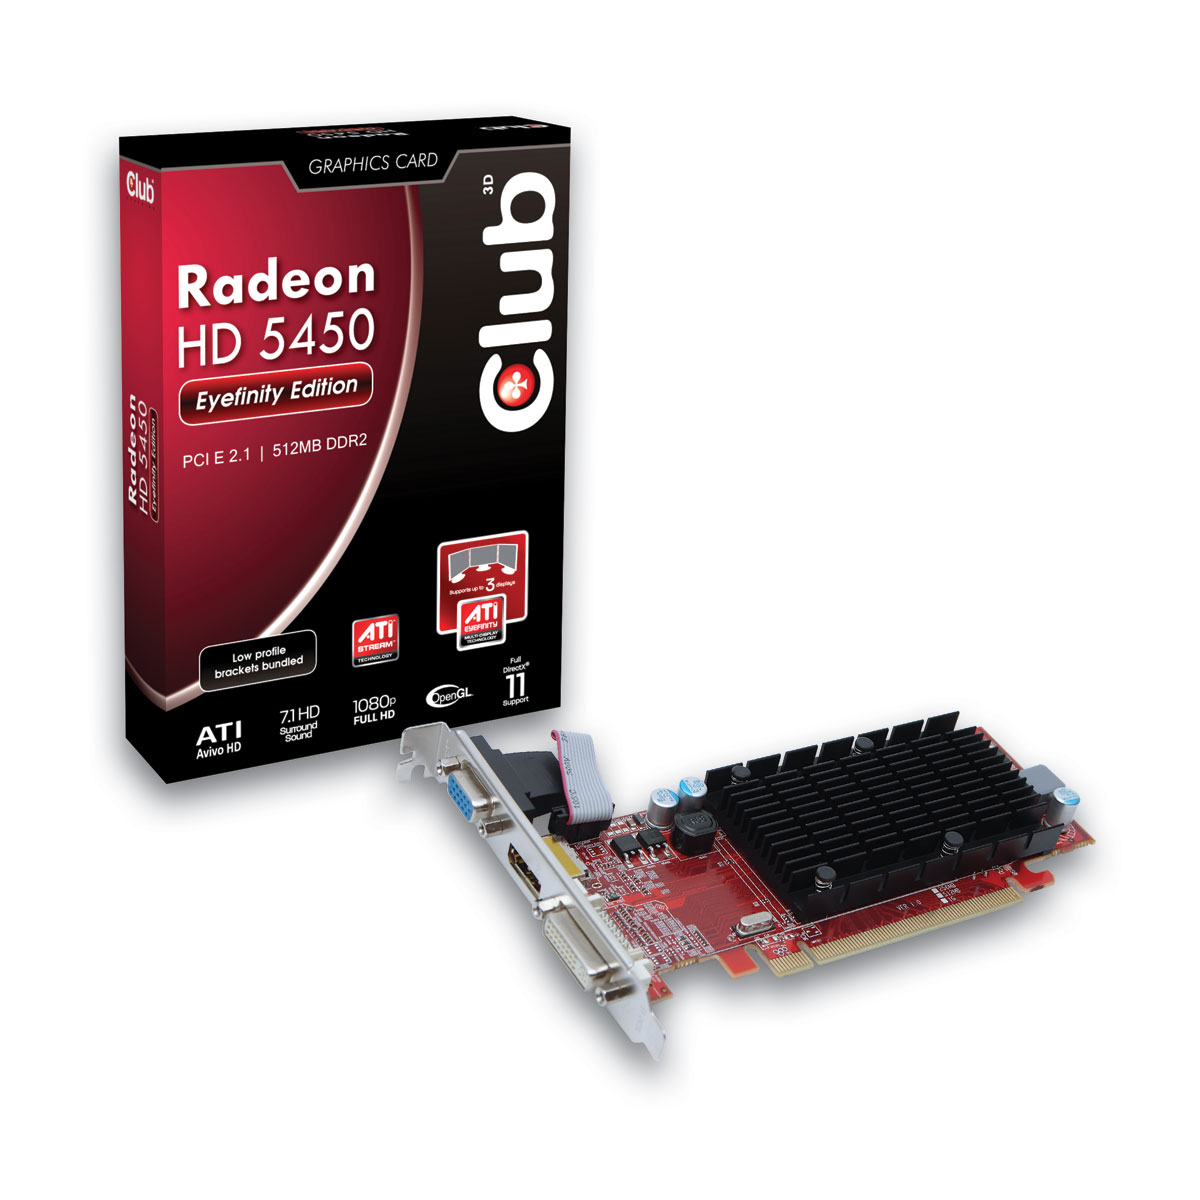 Immagine pubblicata in relazione al seguente contenuto: Club 3D lancia la video card ATI Radeon HD5450 Eyefinity Edition | Nome immagine: news13480_1.jpg